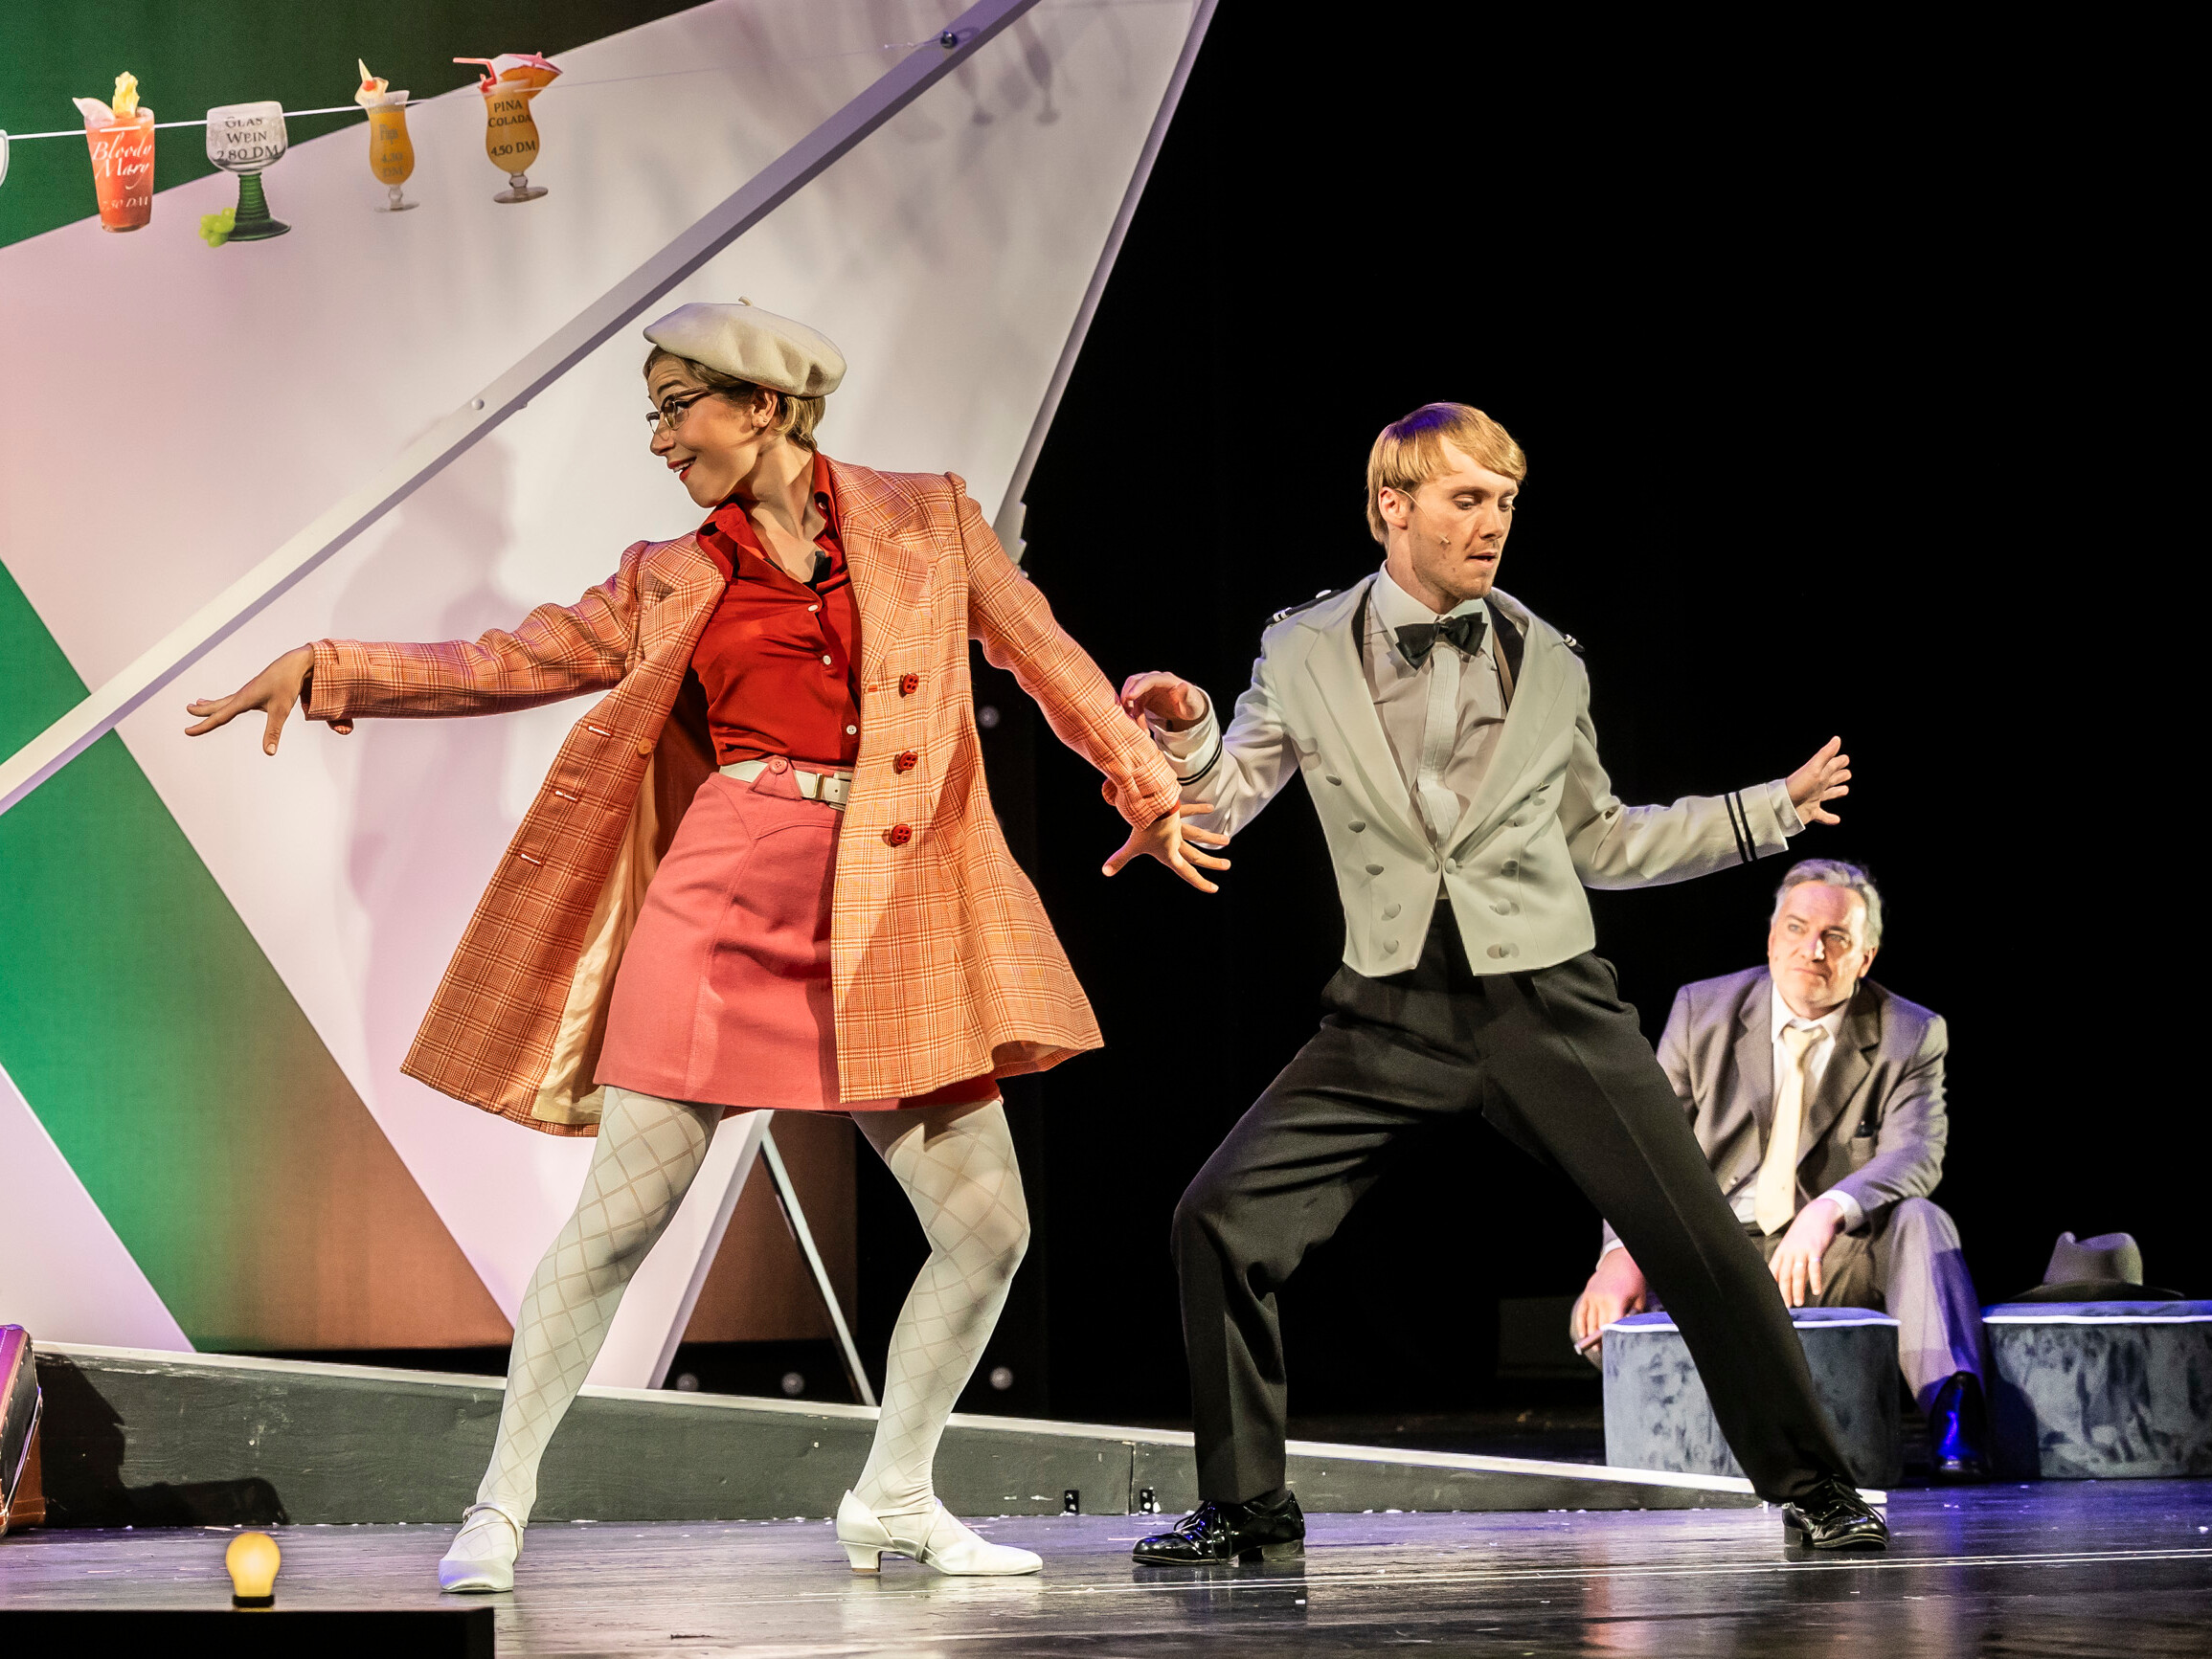 Tanzende Frau in rotem Outfit und beige Jacke, und ein Mann im grauen Smoking auf der Bühne von "Petticoat und Minirock" im Theater Lüneburg. Im Hintergrund sitzt ein Mann in einem Anzug. Foto: Jochen Quast.